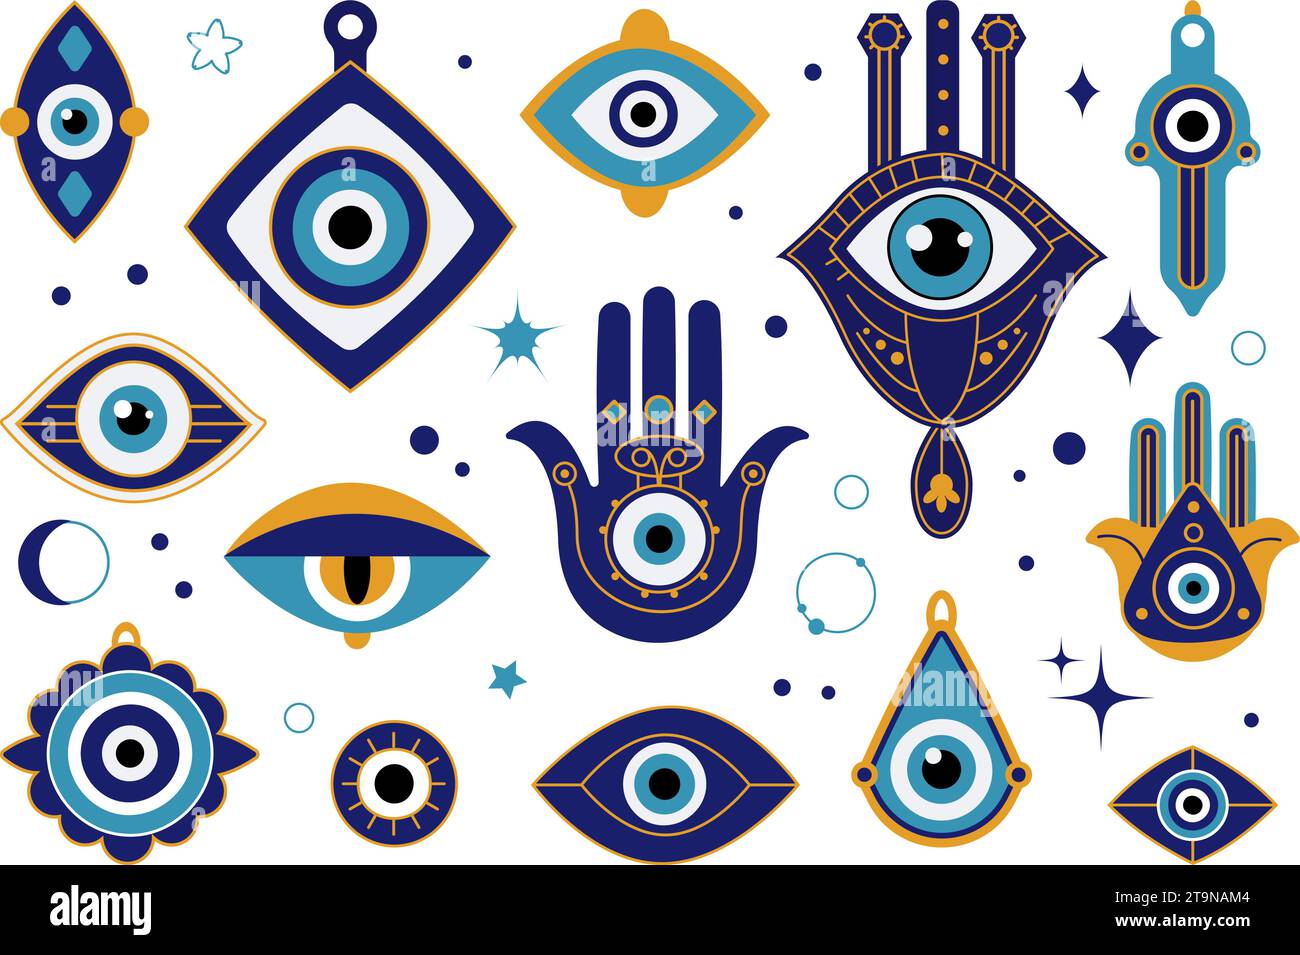 Böse Augenamulette. Esoterische türkische oder griechische blaue Augen Talisman. Magischer Schutz, heilige Symbole und Religionssymbole. Anständige Vektor-Fantasy-Sammlung Stock Vektor